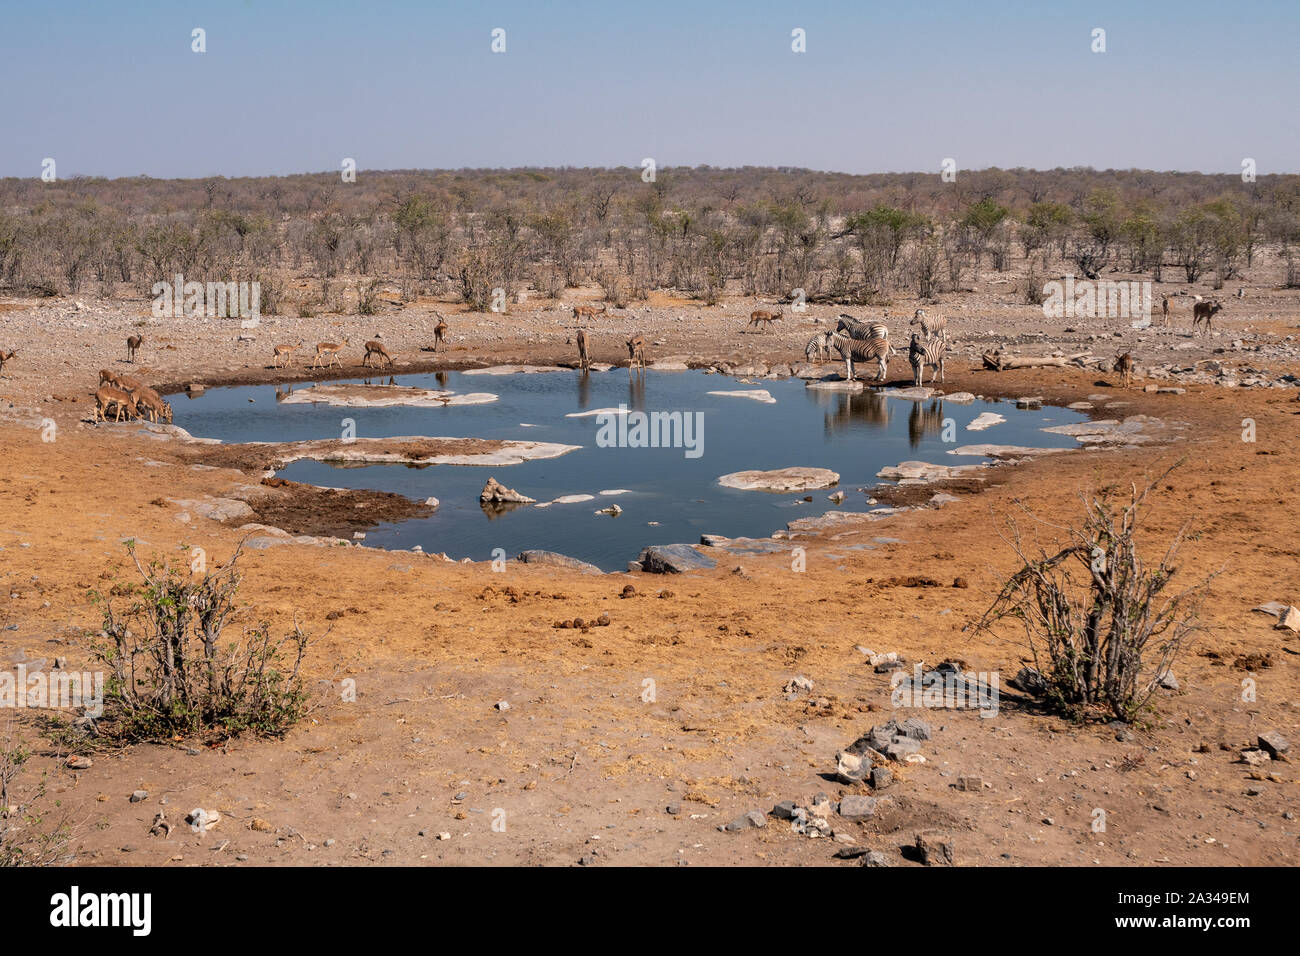 Waterhole Halali avec les impalas, Koudous et Zebra, potable paysage de savane sèche Etosha National Park, Namibie Banque D'Images